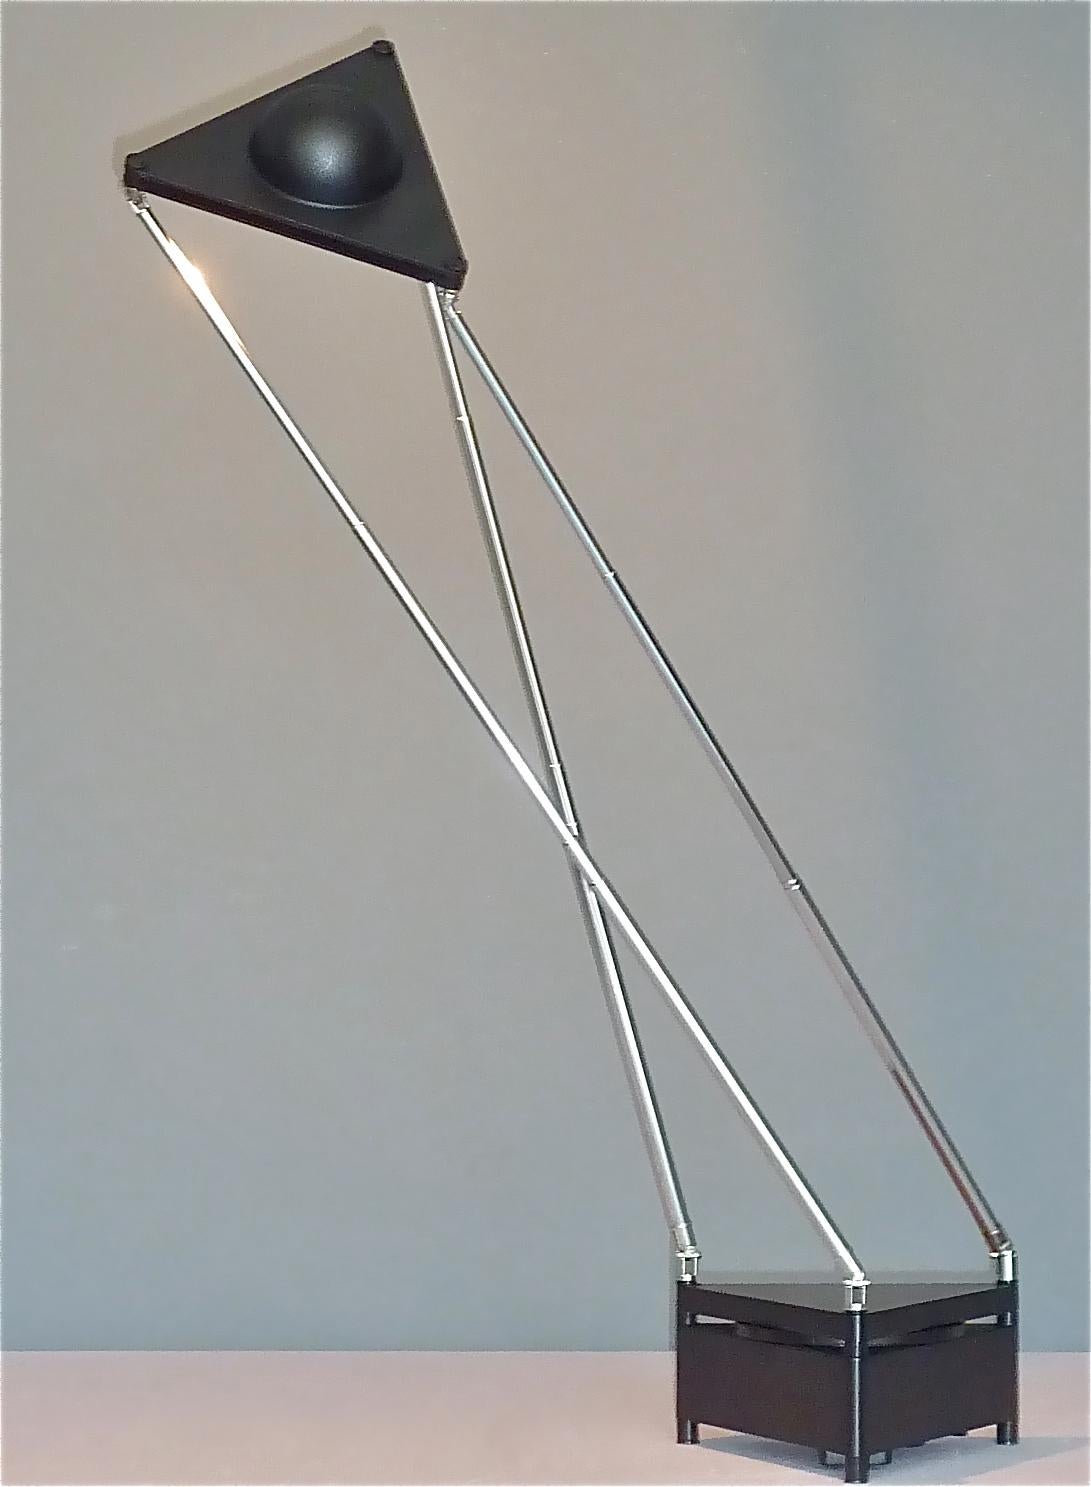 Lampe de table moderne sculpturale conçue par F.A. Porsche en 1989 et fabriqué par Kandido pour Luci Italia. La lampe halogène télescopique a une base en fonte d'aluminium émaillée noire avec un interrupteur circulaire rotatif ON / OFF